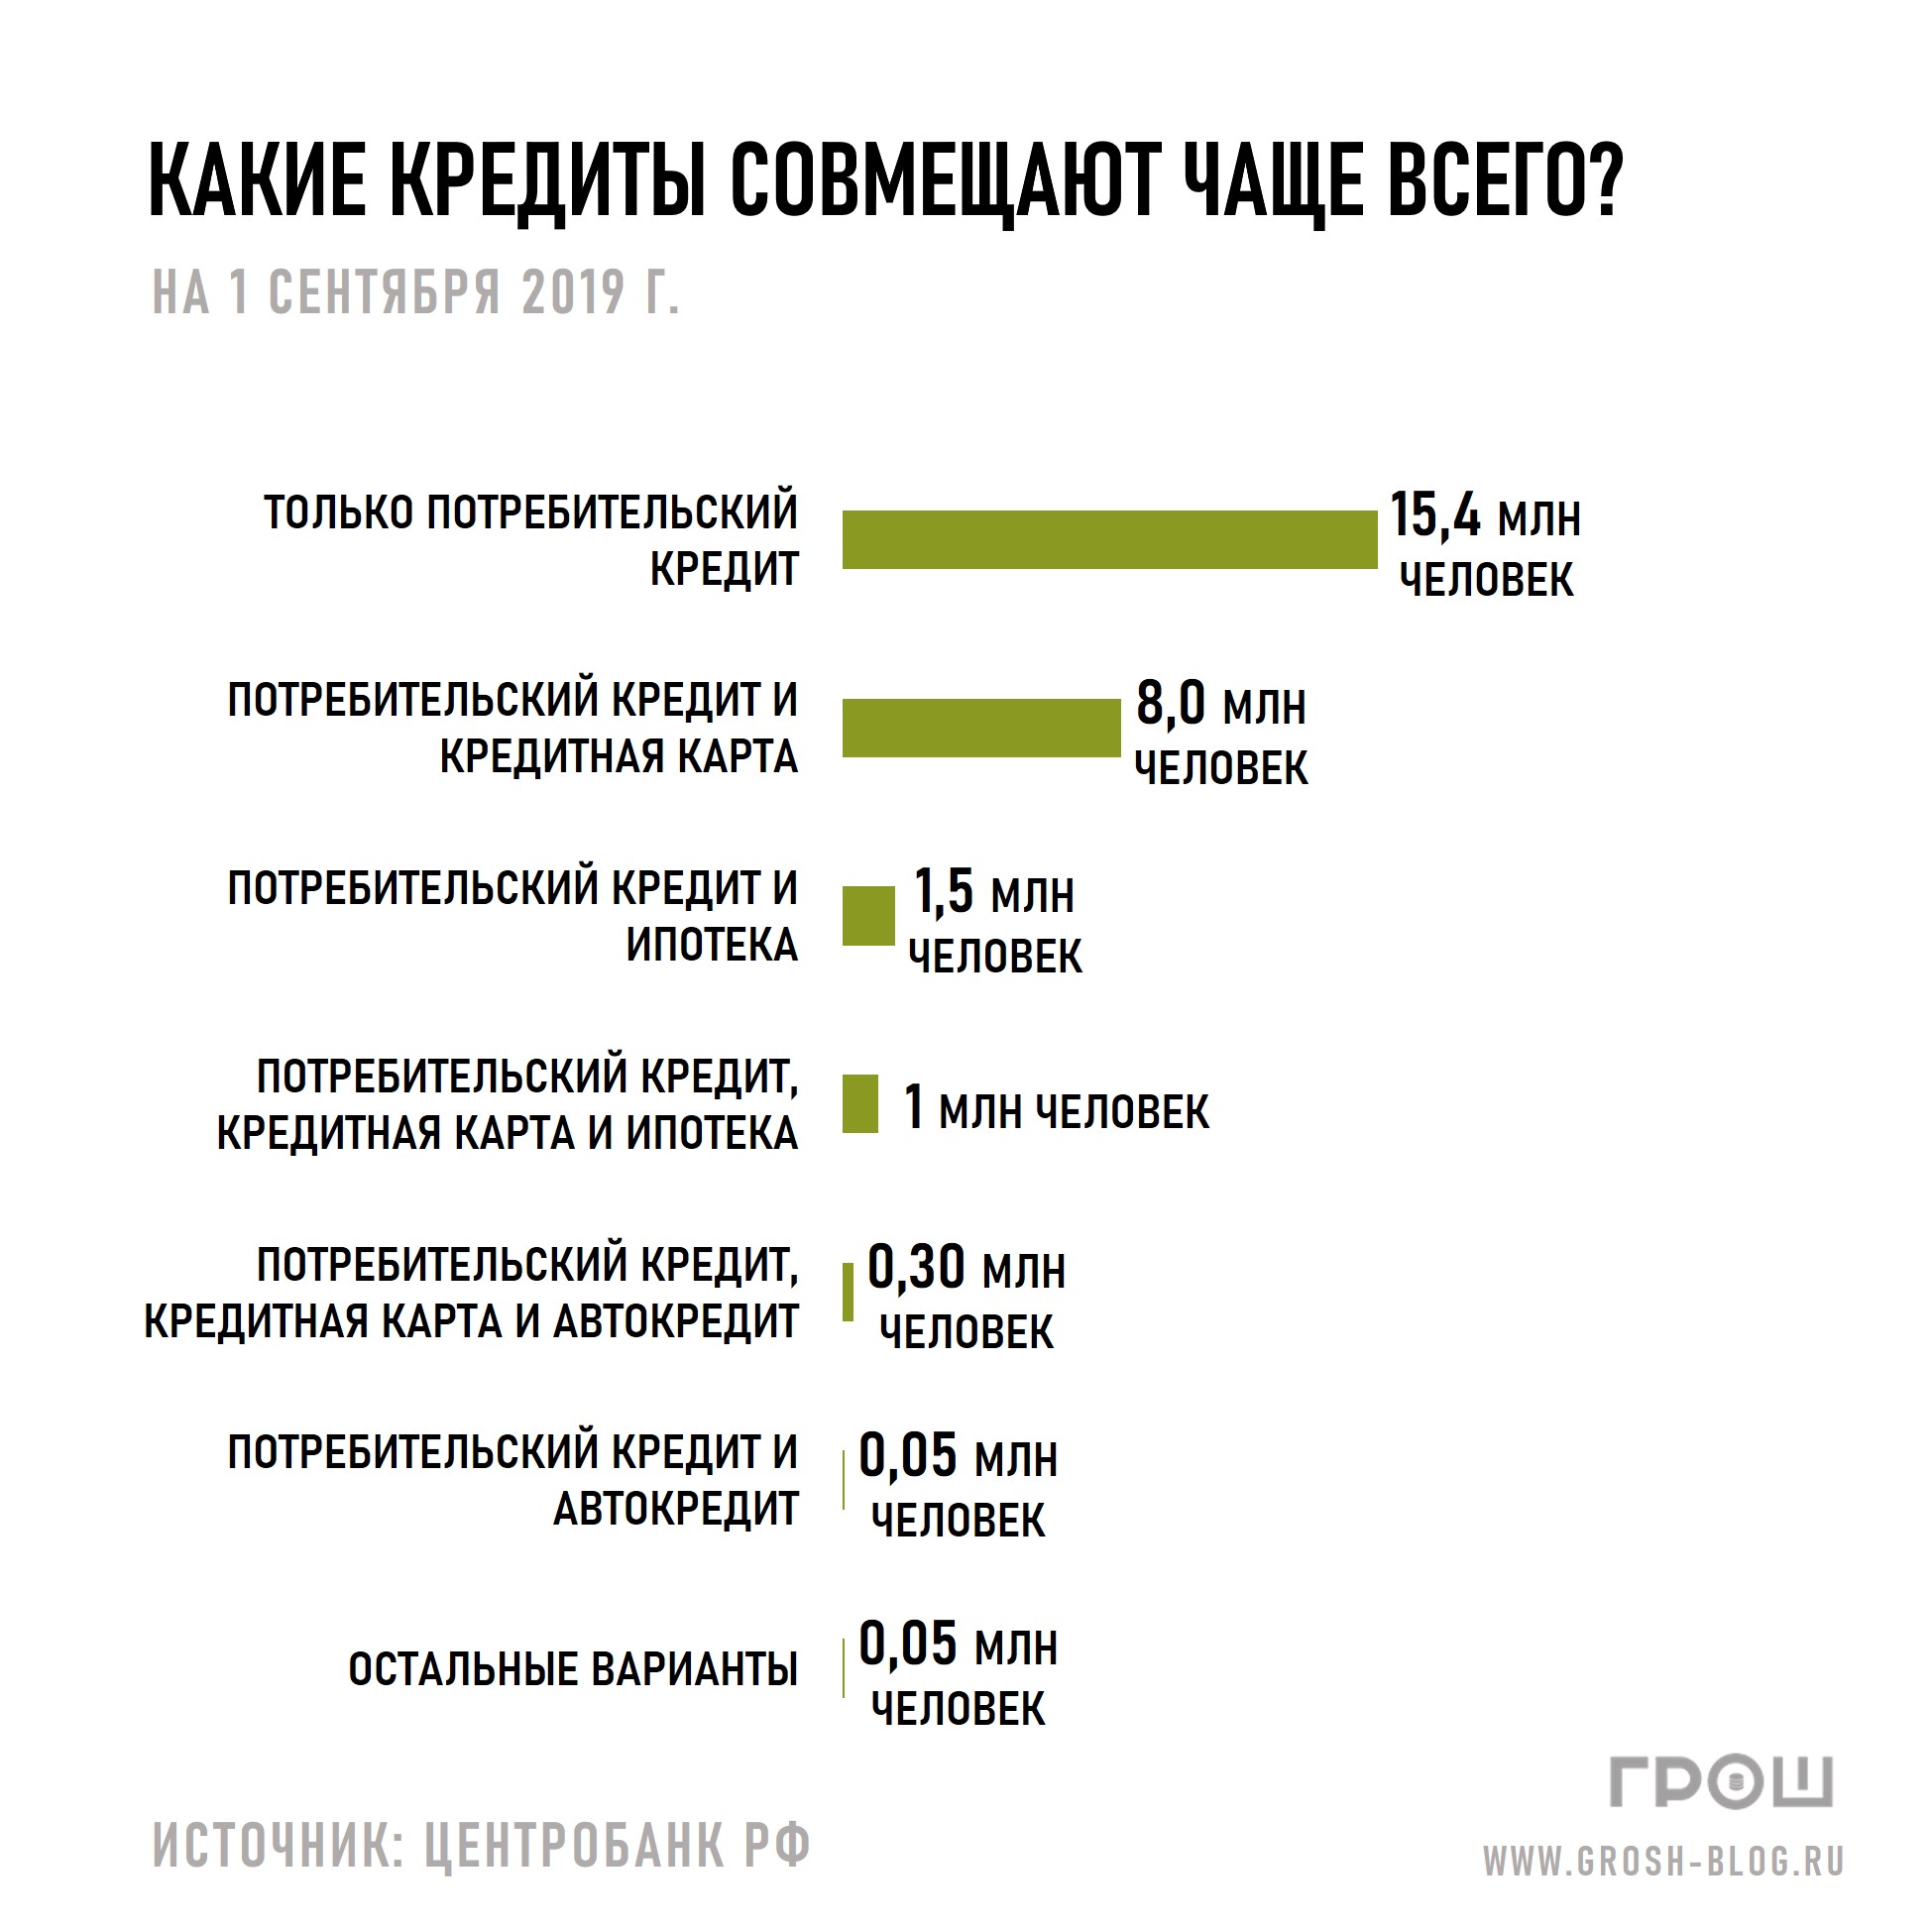 https://grosh-blog.ru/ какие кредиты совмещают чаще всего журнал ГРОШ